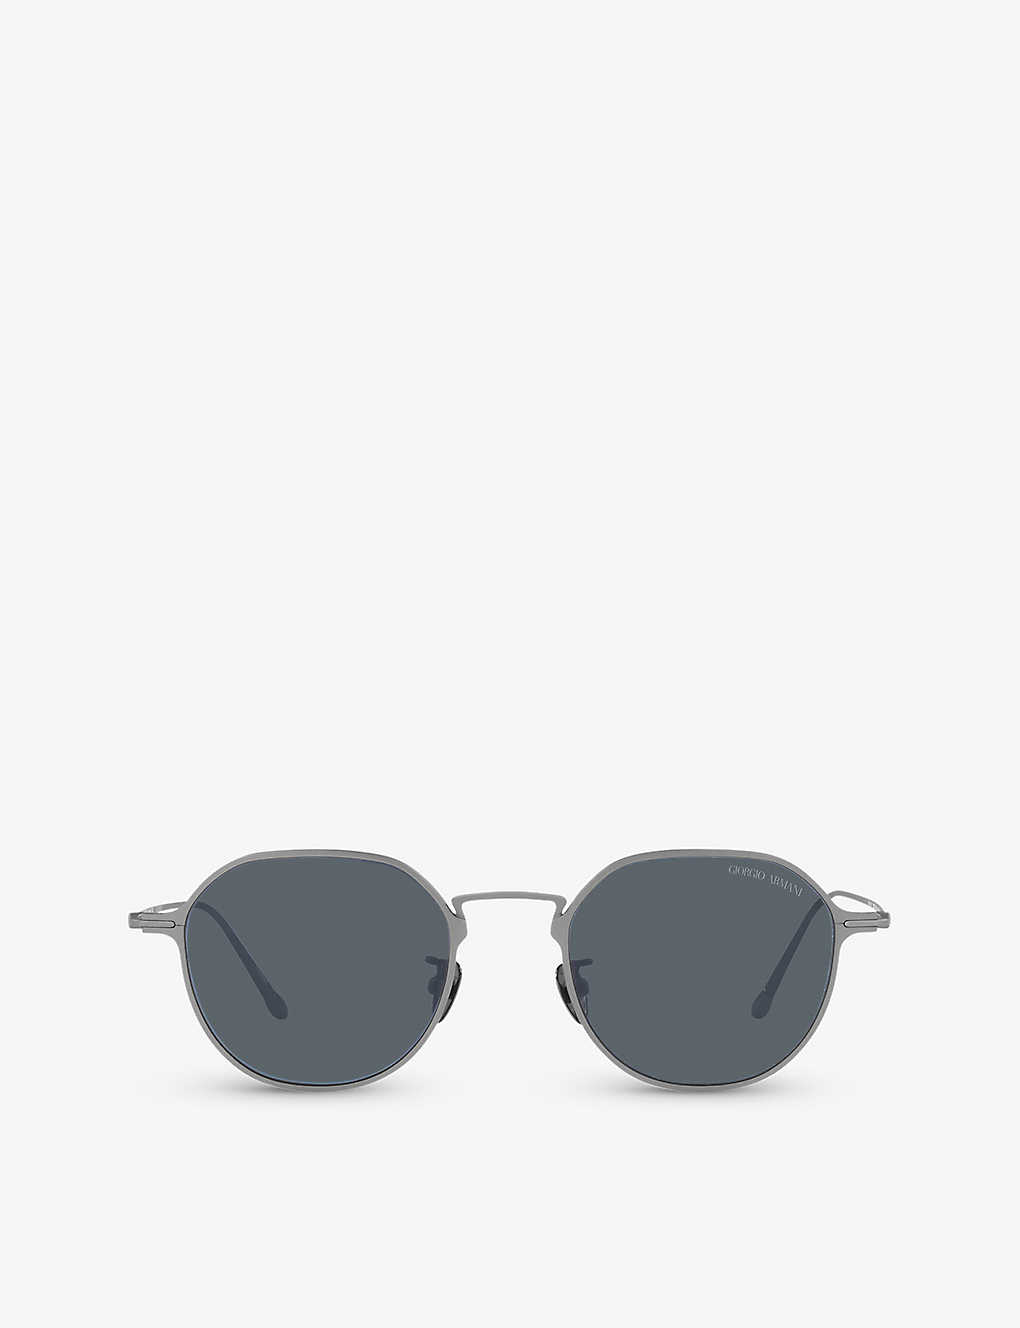 Giorgio Armani Sunglasses In Grey